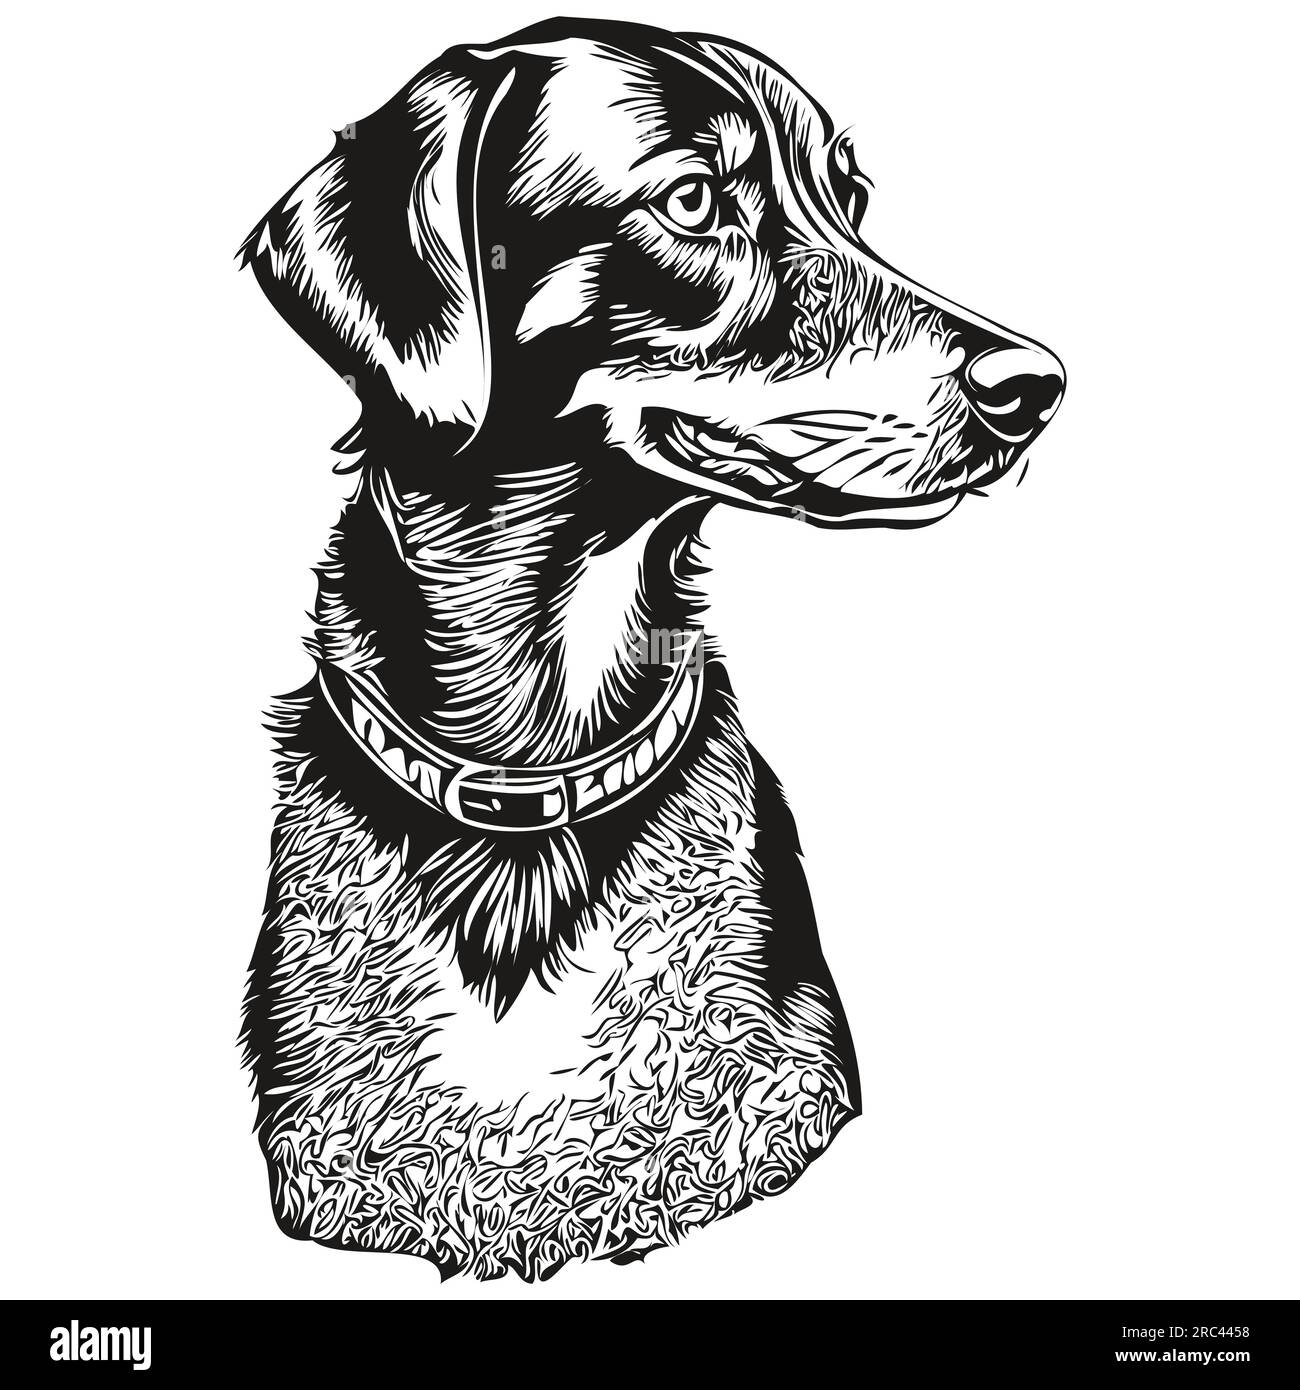 Noir et Tan Coonhound chien de race dessin au trait, clip art animal dessin à la main vecteur noir et blanc Illustration de Vecteur